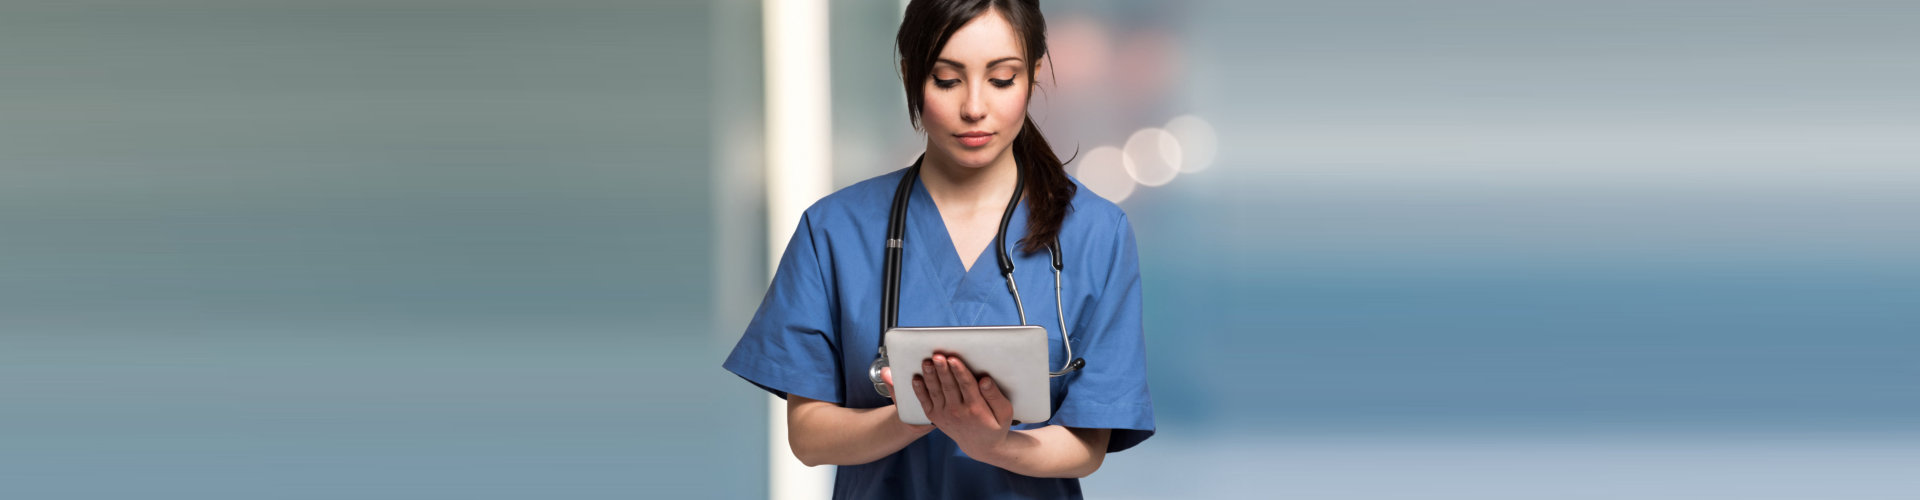 a nurse holding a tablet